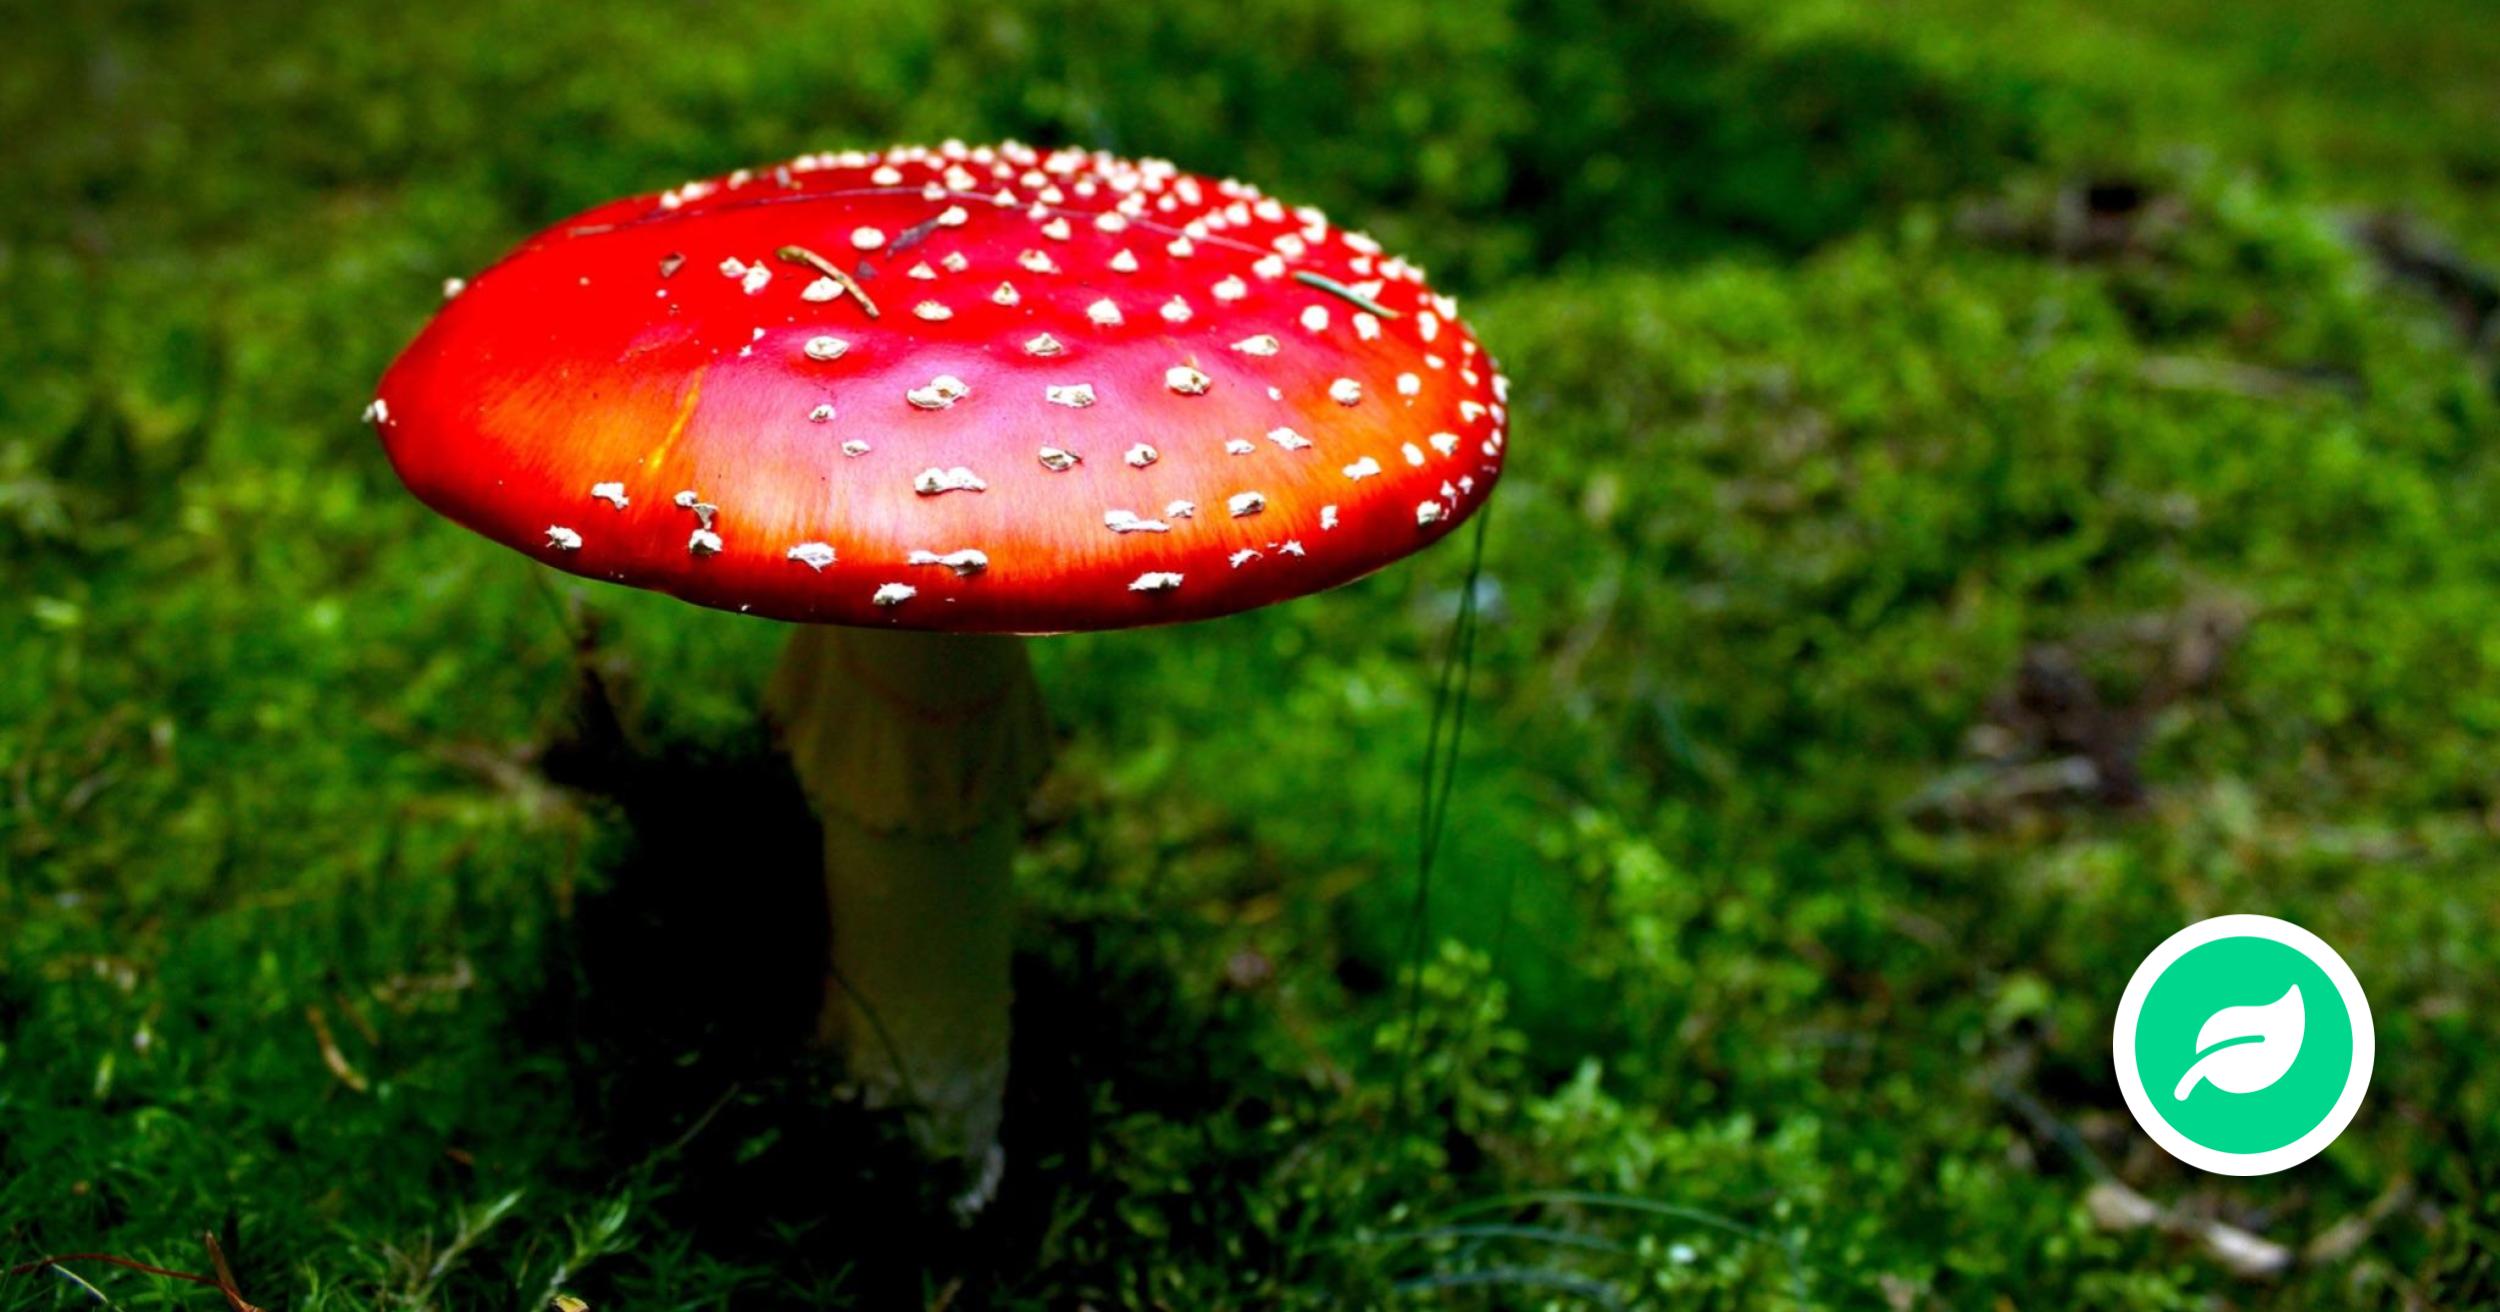 Hvorfor er nogle svampe giftige?